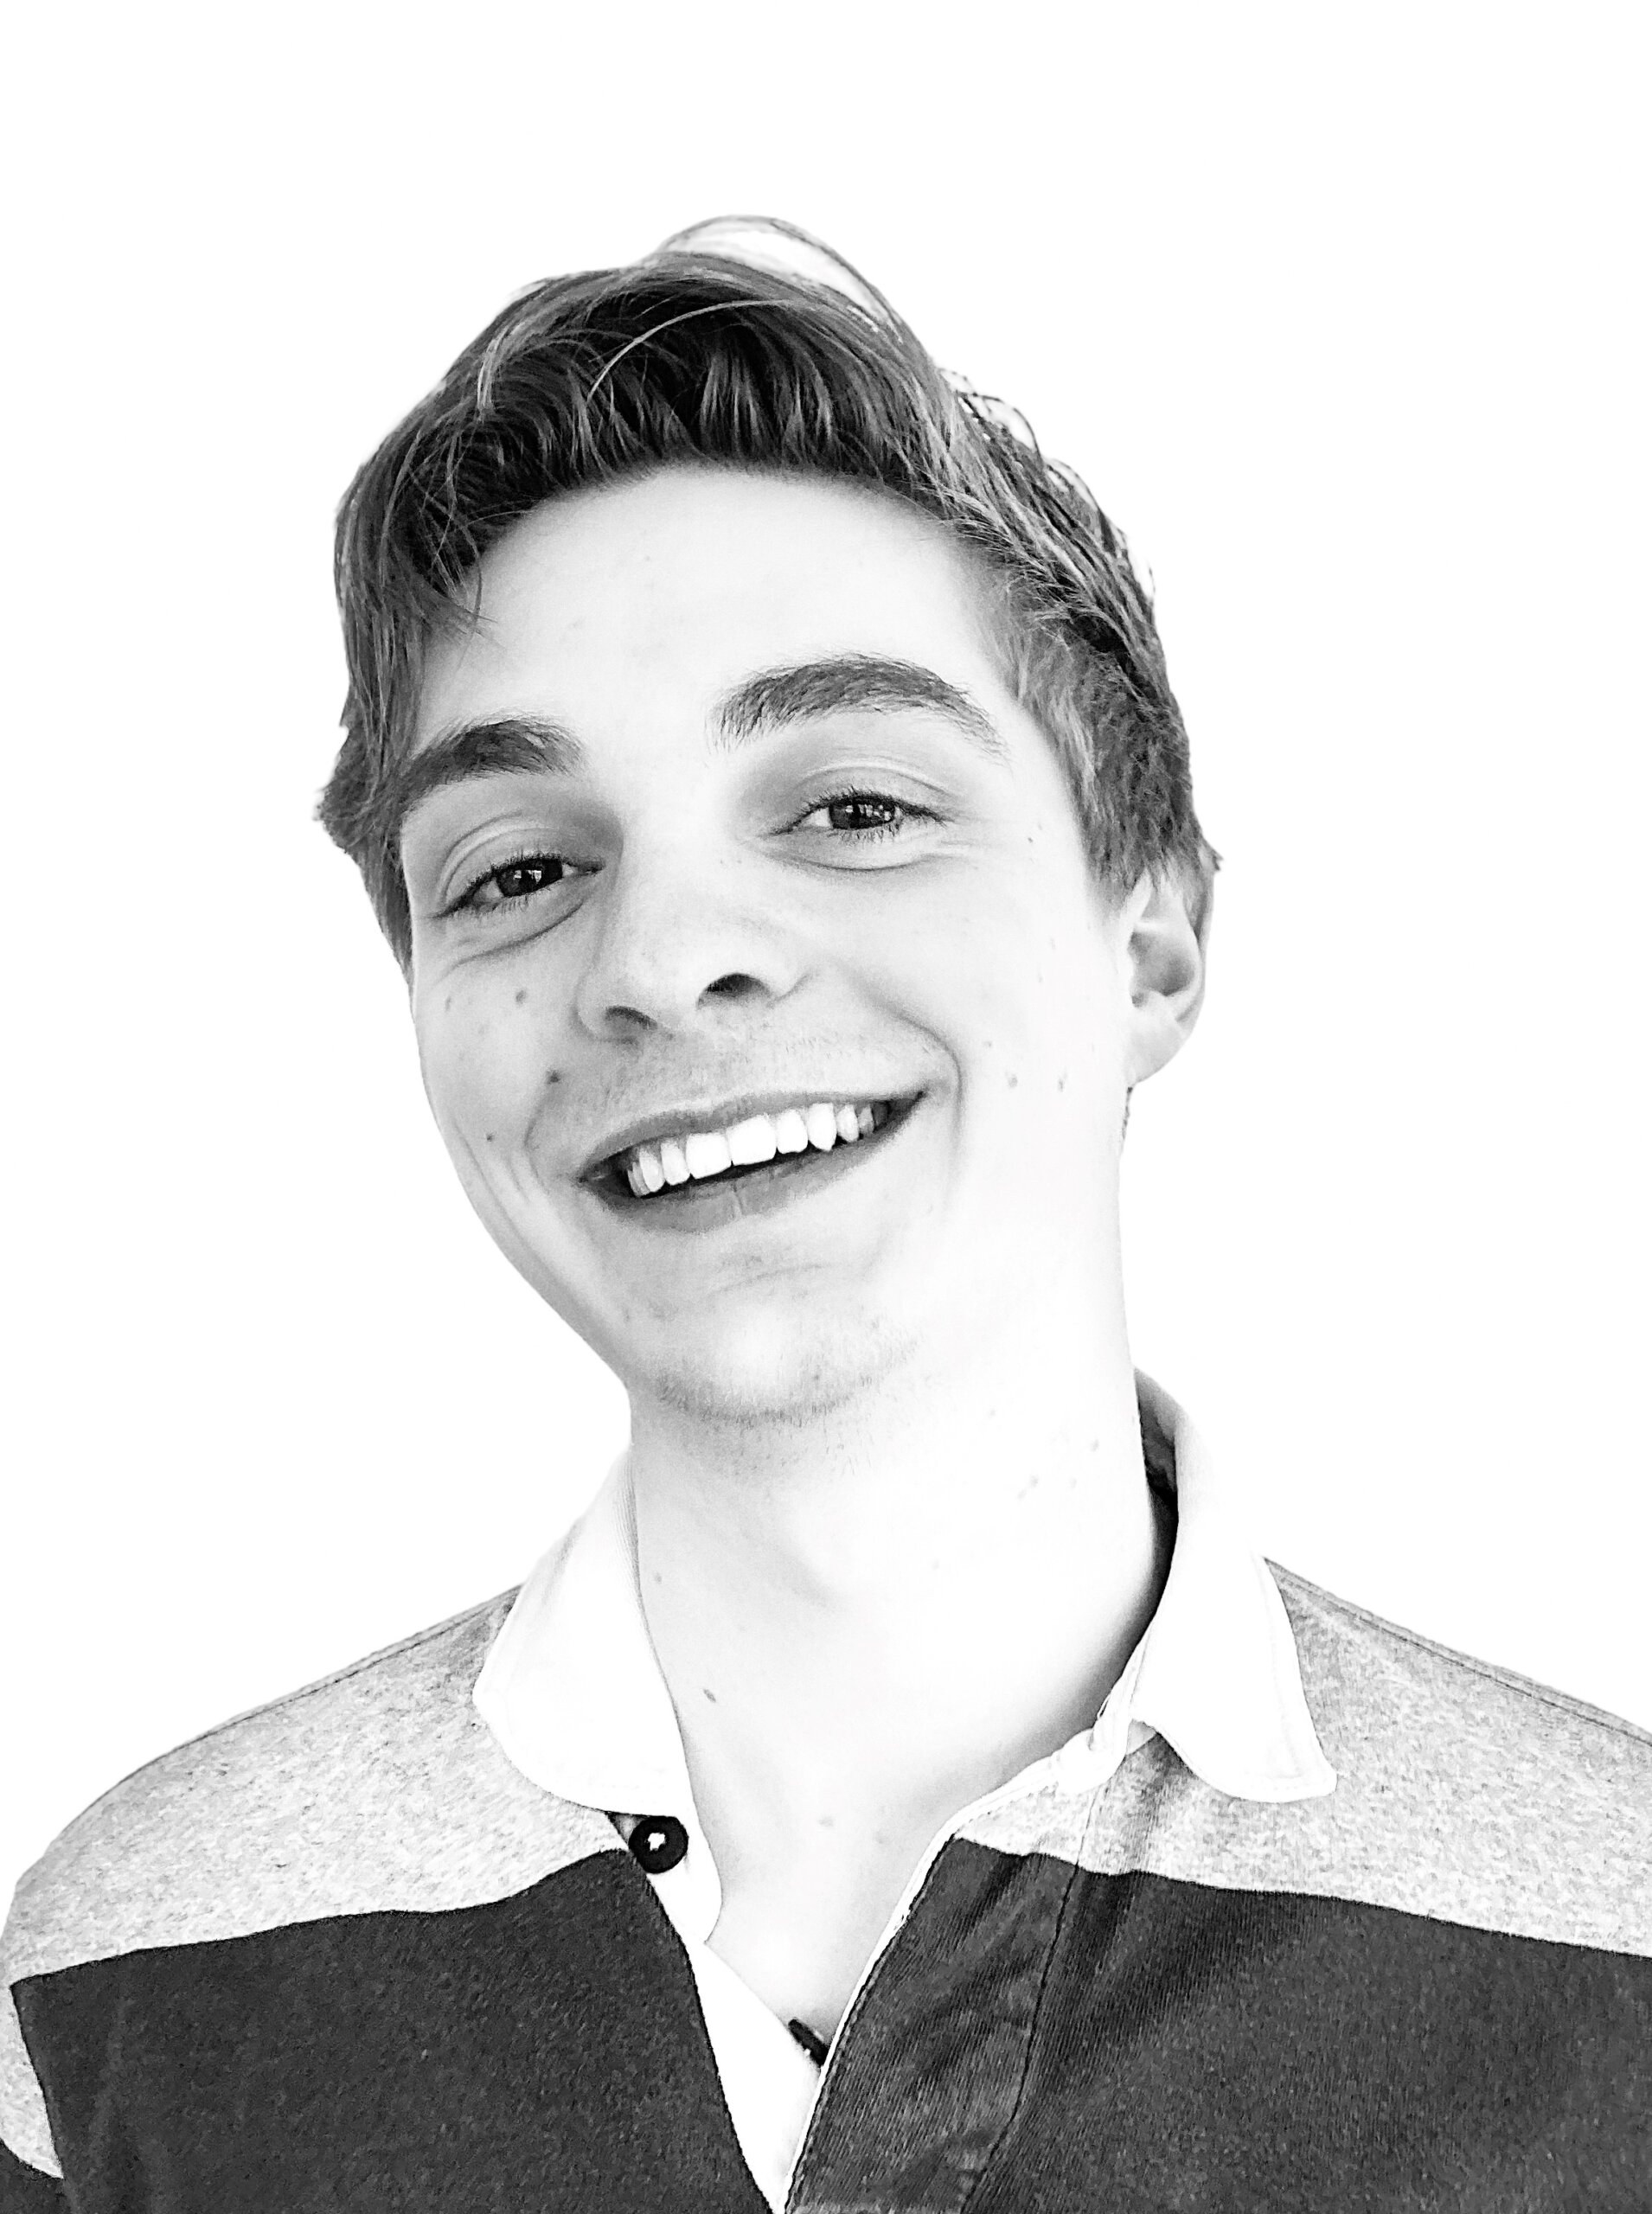 foto van een jongen aan het lachen in zwart wit